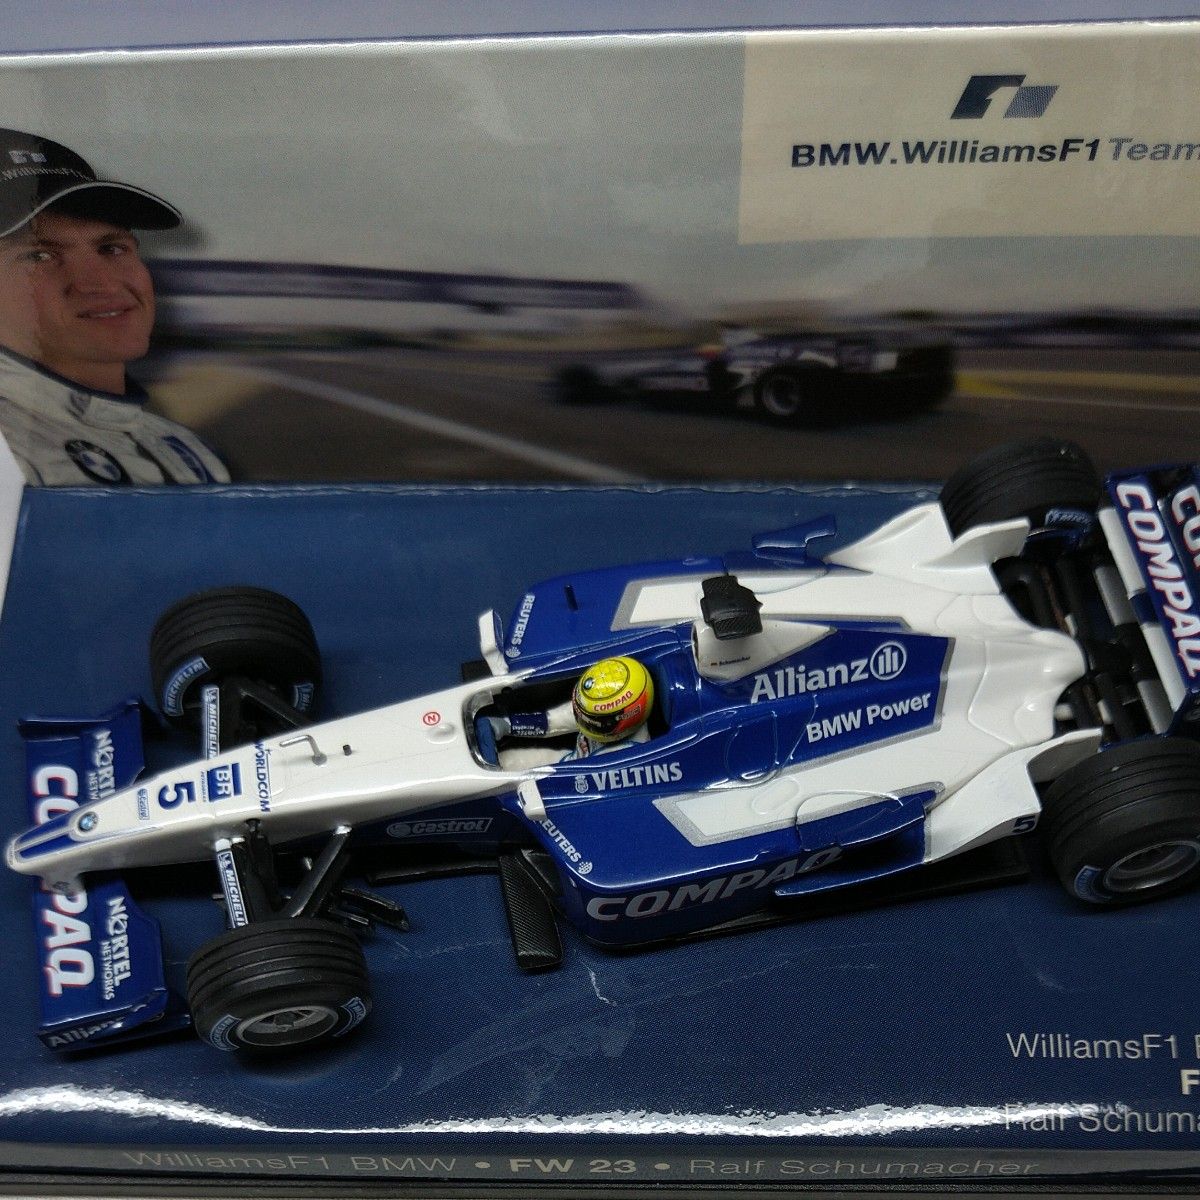 ミニカー 1/43 BMW Williams F1 BMW  FW23 Ralf Schumacher #5